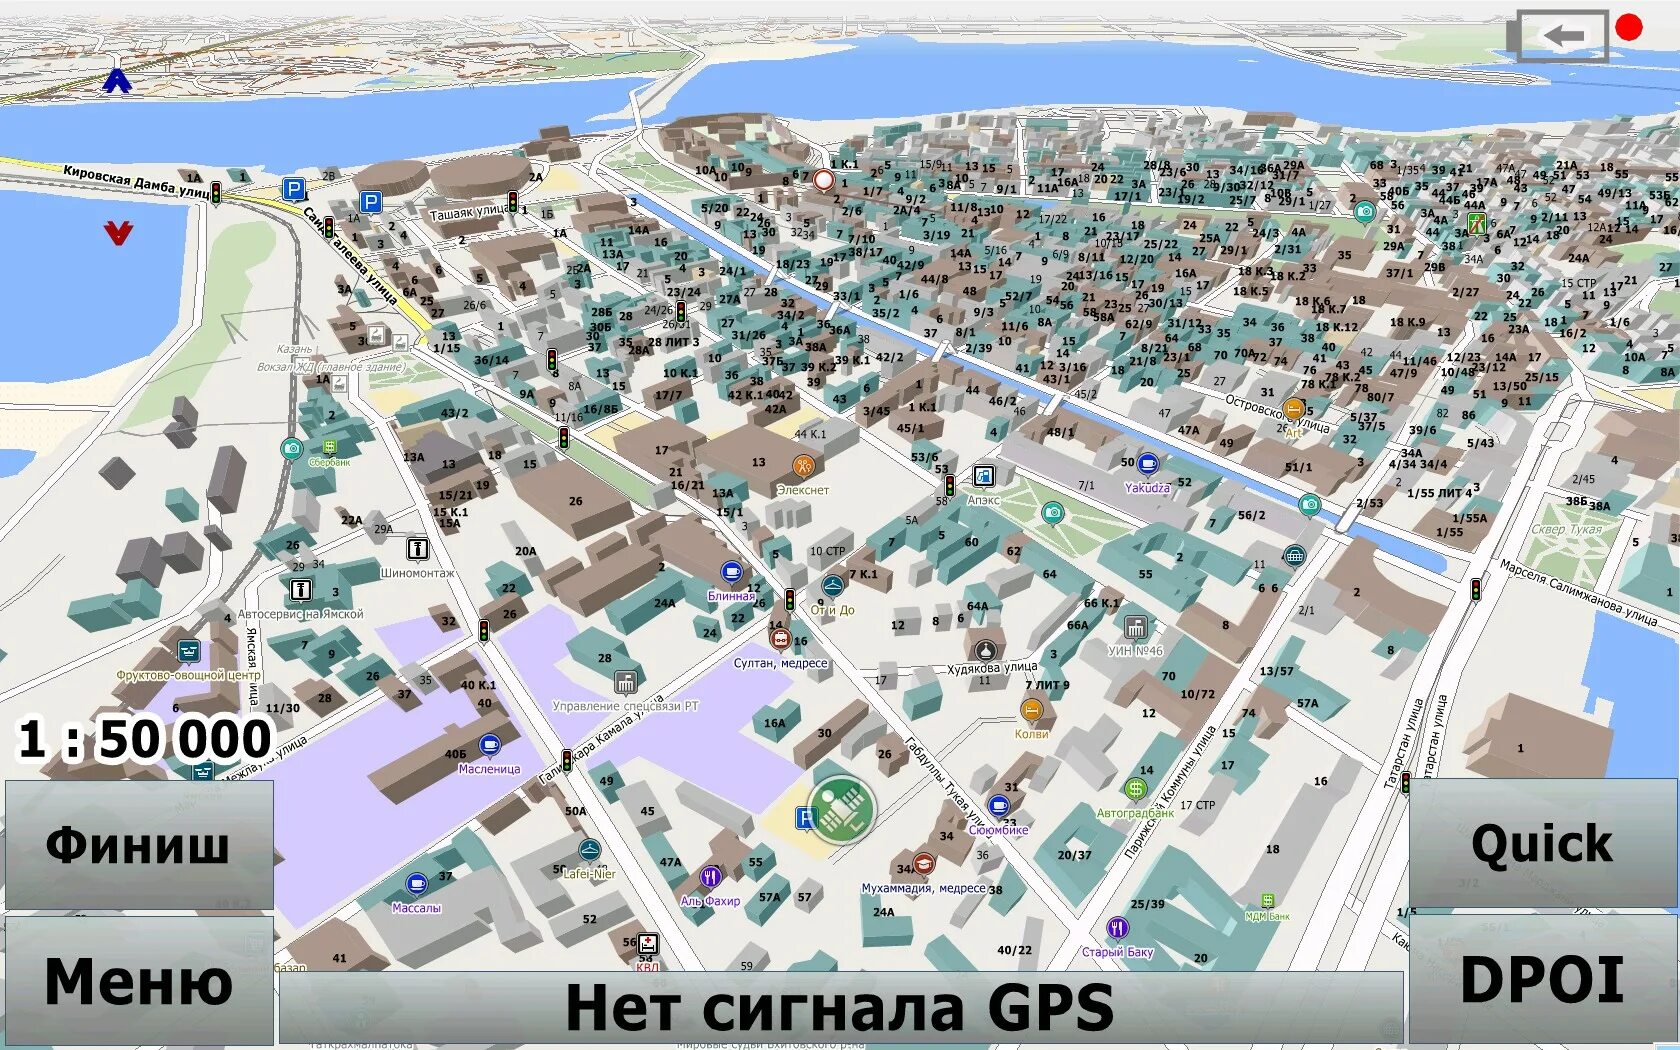 Где город нижнекамск. Карта г.Нижнекамска. Карта города Нижнекамск. Карта Нижнекамска с улицами. Карта Нижнекамска по микрорайонам.